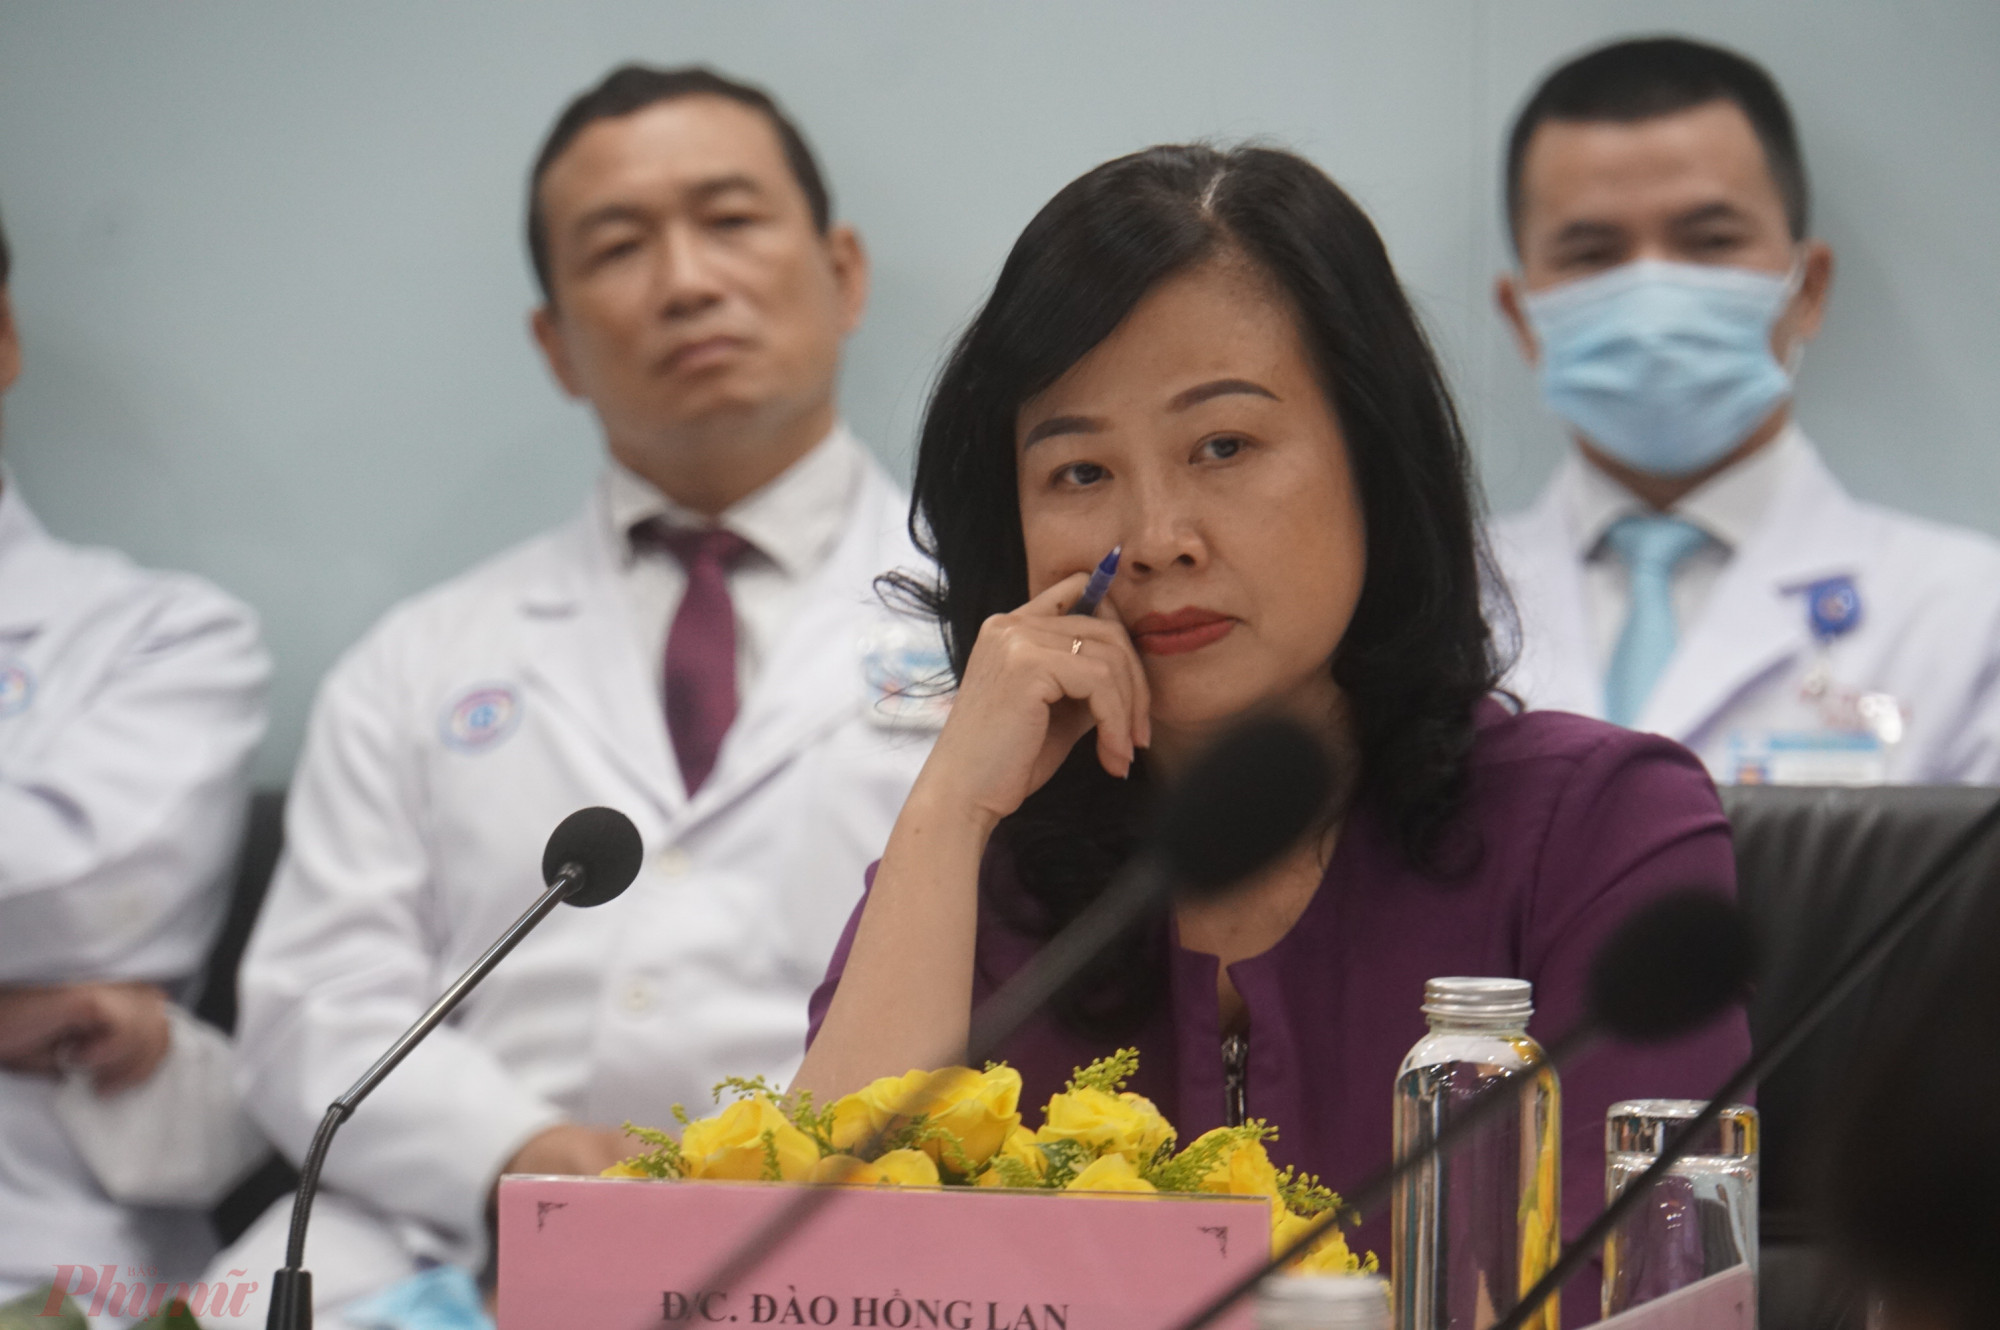 Quyền Bộ trưởng Đào Hồng Lan cho biết bà rất đau lòng khi đọc những bài báo phản ánh người bệnh tự đi mua vật tư mang vào cho bác sĩ khám chữa bệnh